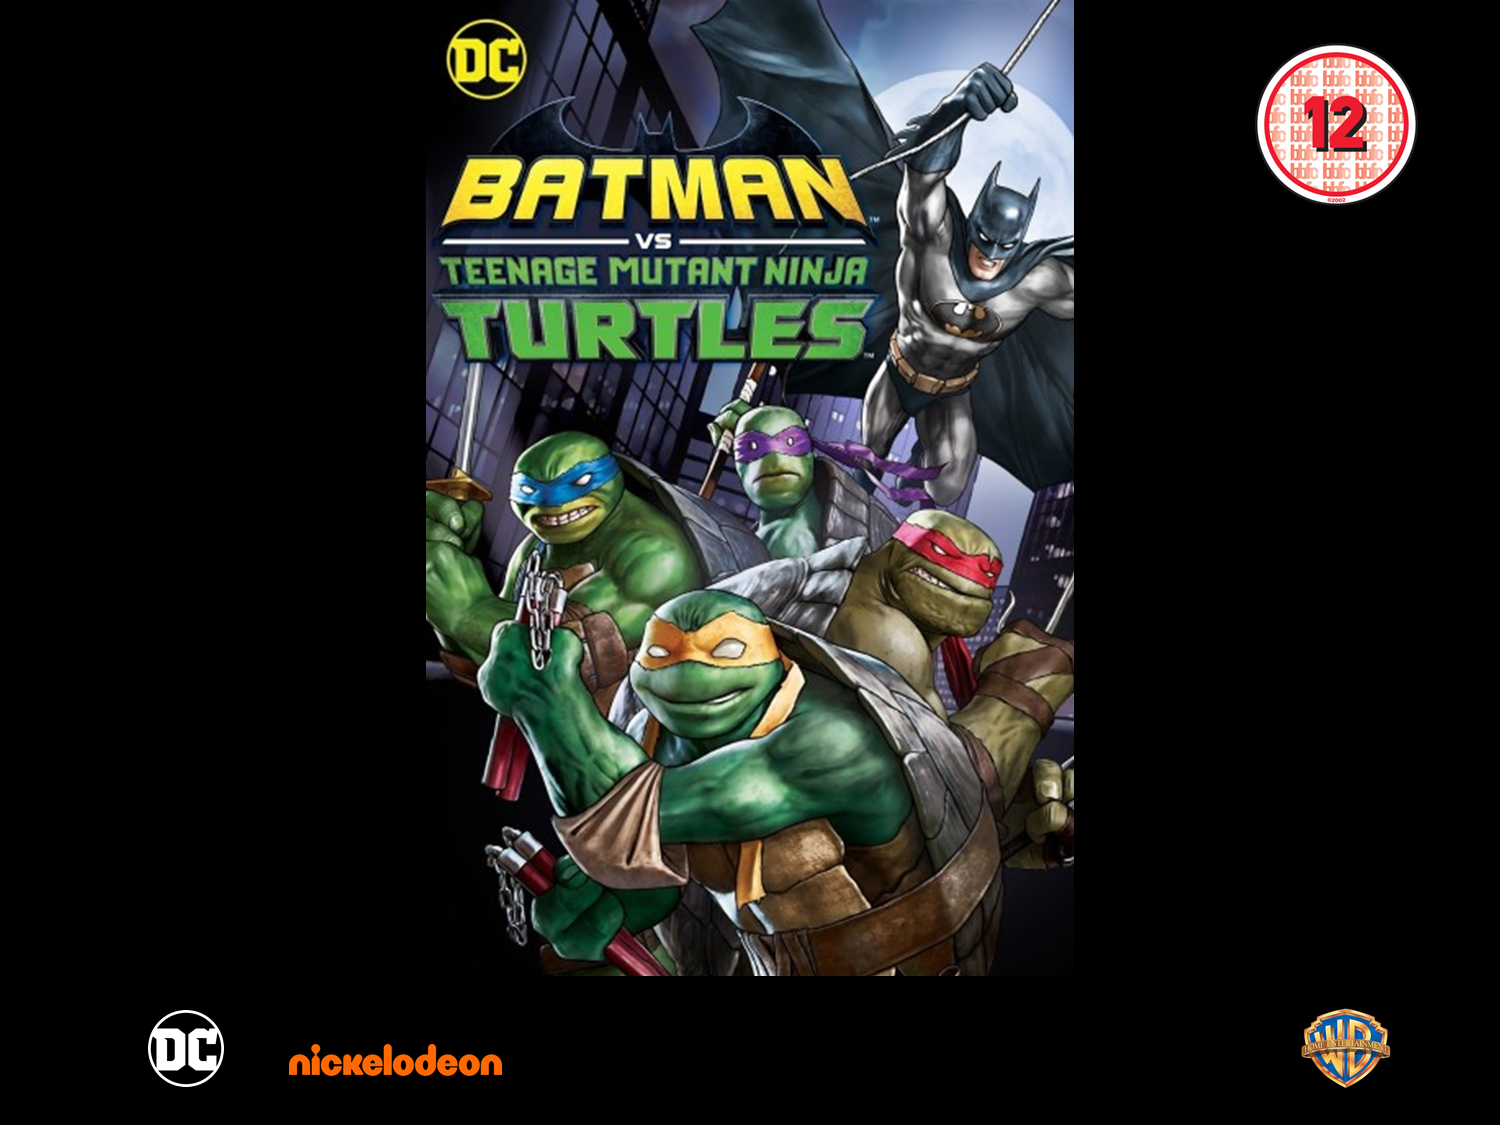 Batman vs. Teenage Mutant Ninja Turtles (4K Ultra HD/Blu-ray) [4K UHD]